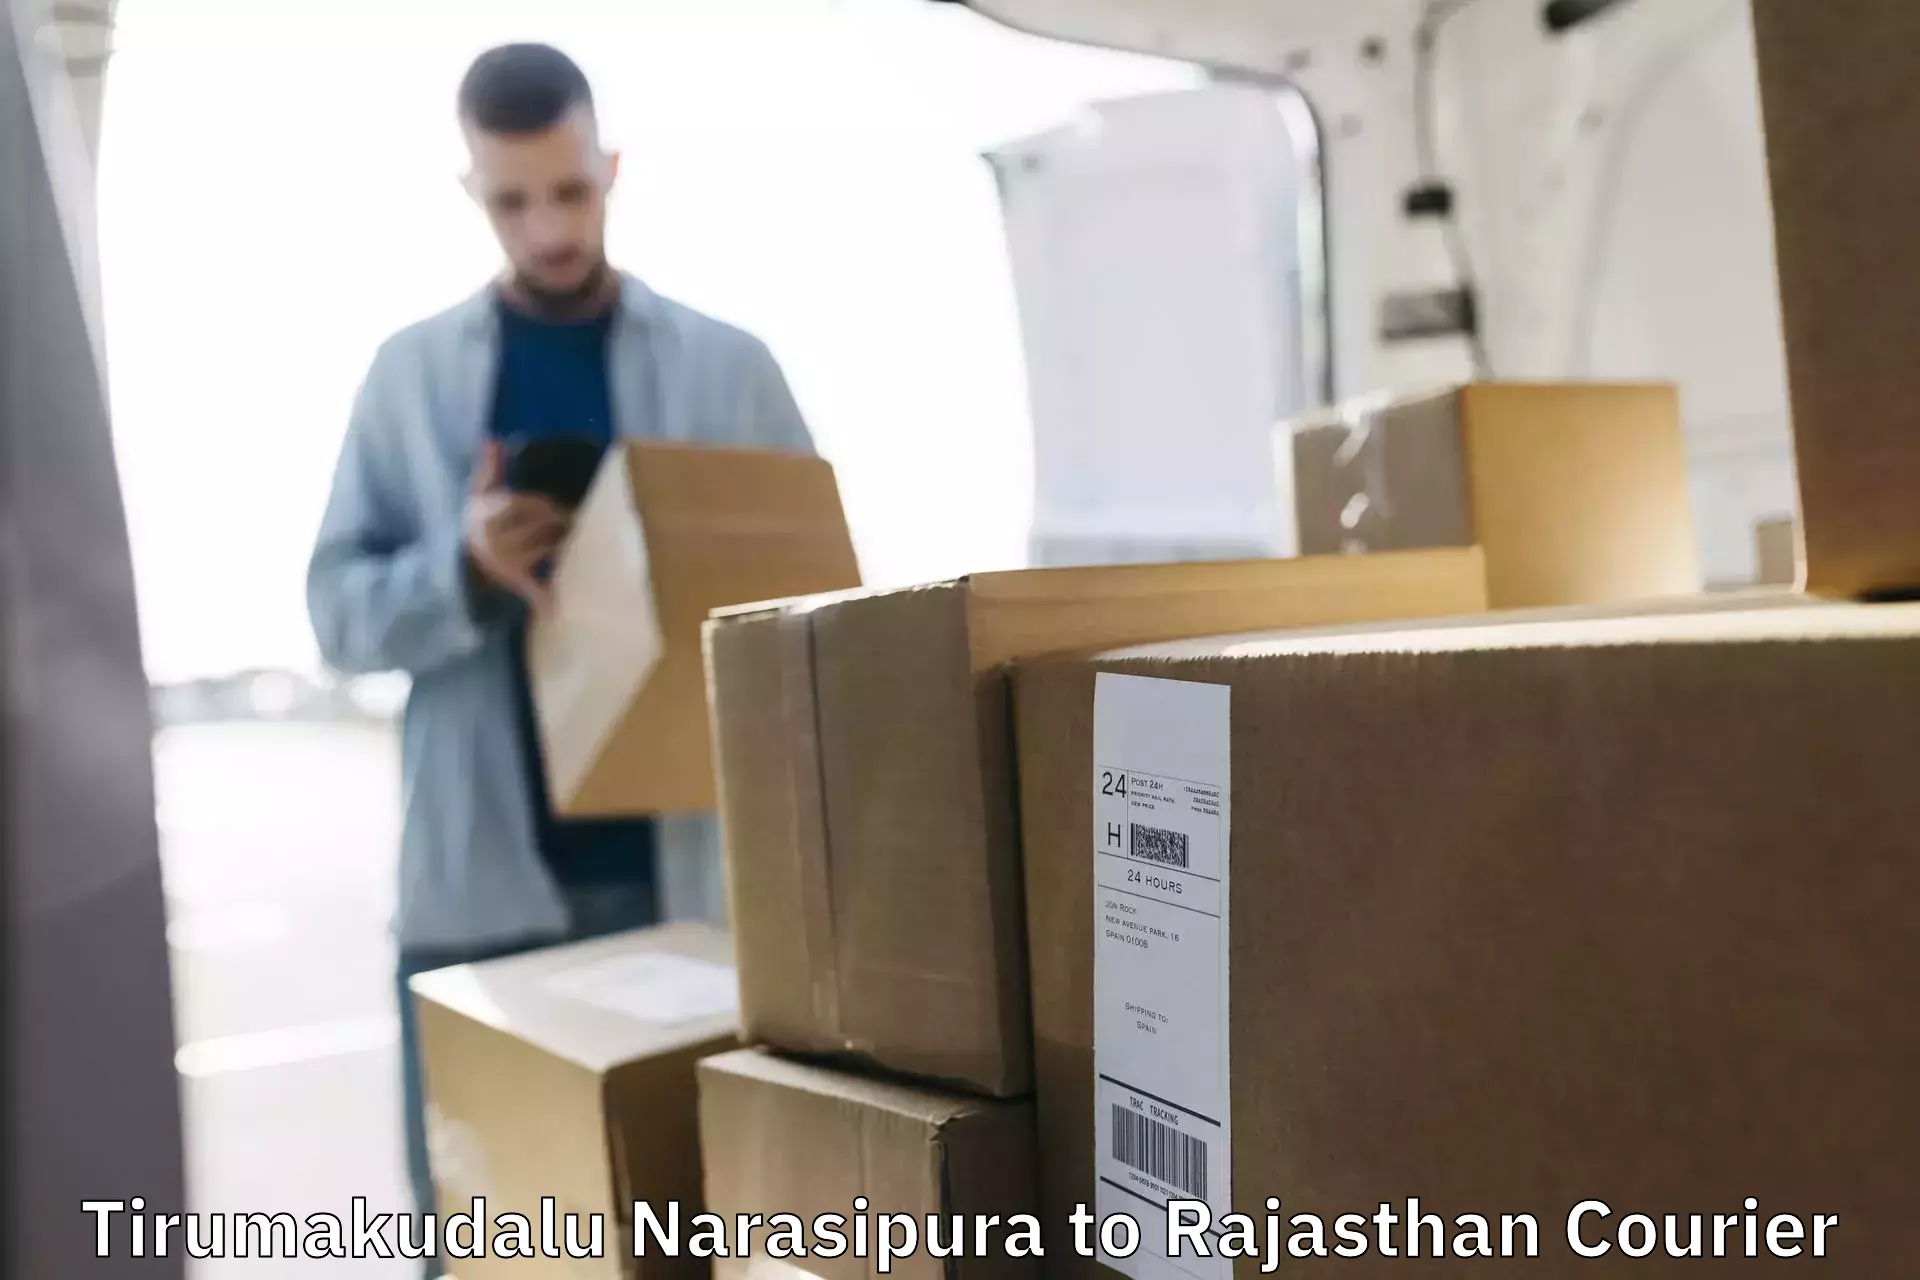 Express logistics service Tirumakudalu Narasipura to Bikaner